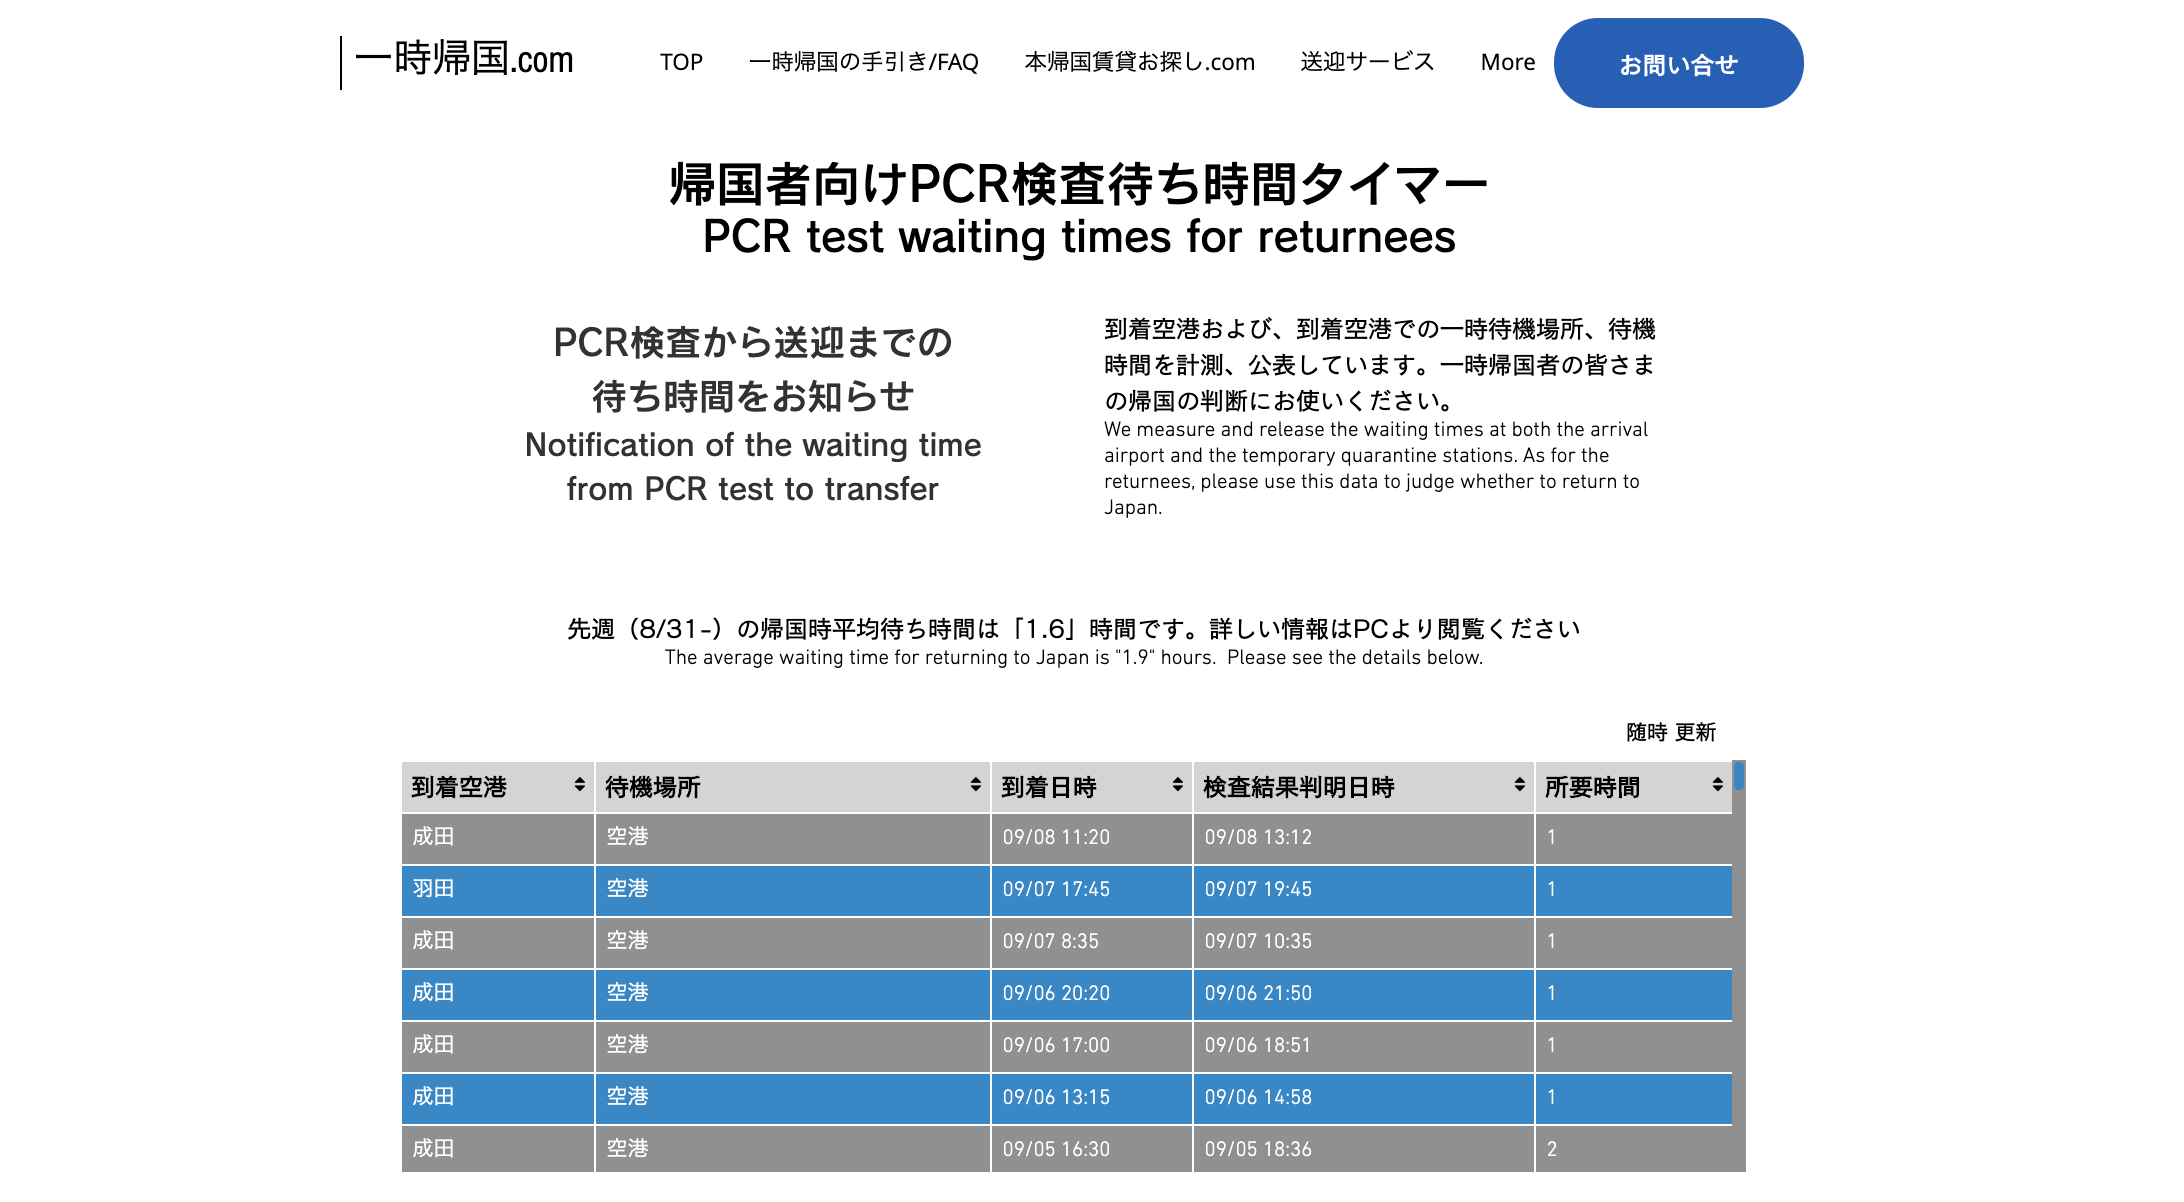 【空港PCR検査結果待ち時間 最新統計】帰国者PCR検査待ち時間、羽田は1時間台で安定 成田は僅かに短縮 先週(8/31〜9/6)1週間の平均待ち時間 (国内最大数の帰国データ)